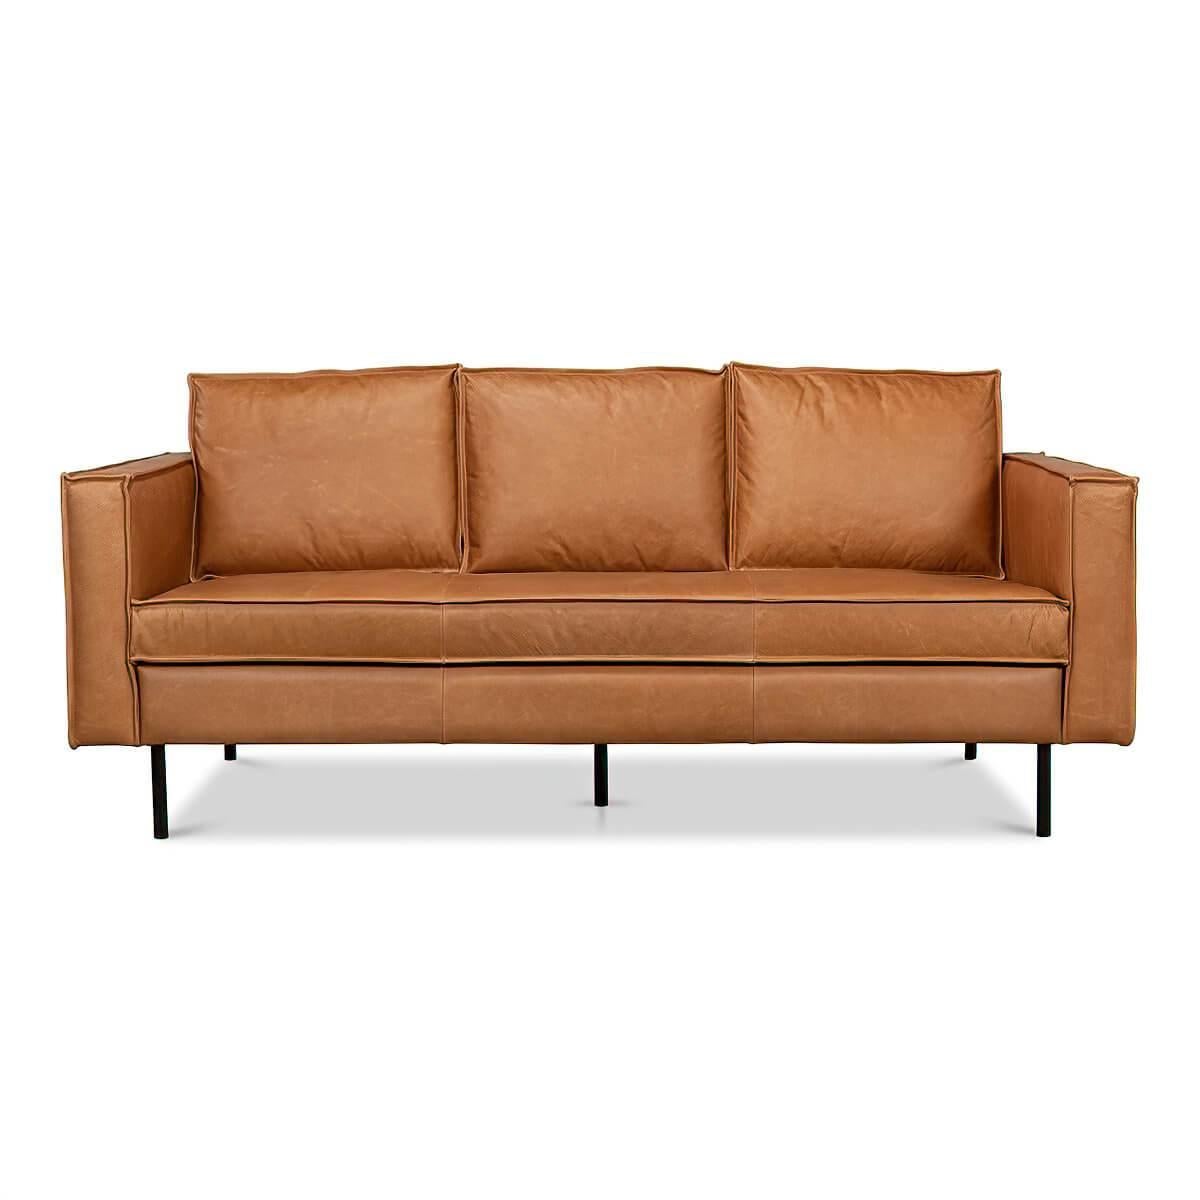 Canapé en cuir italien de style moderne du milieu du siècle, avec une forme de boîte audacieuse reposant sur une base minimaliste de pieds en fer.

Dimensions : 74